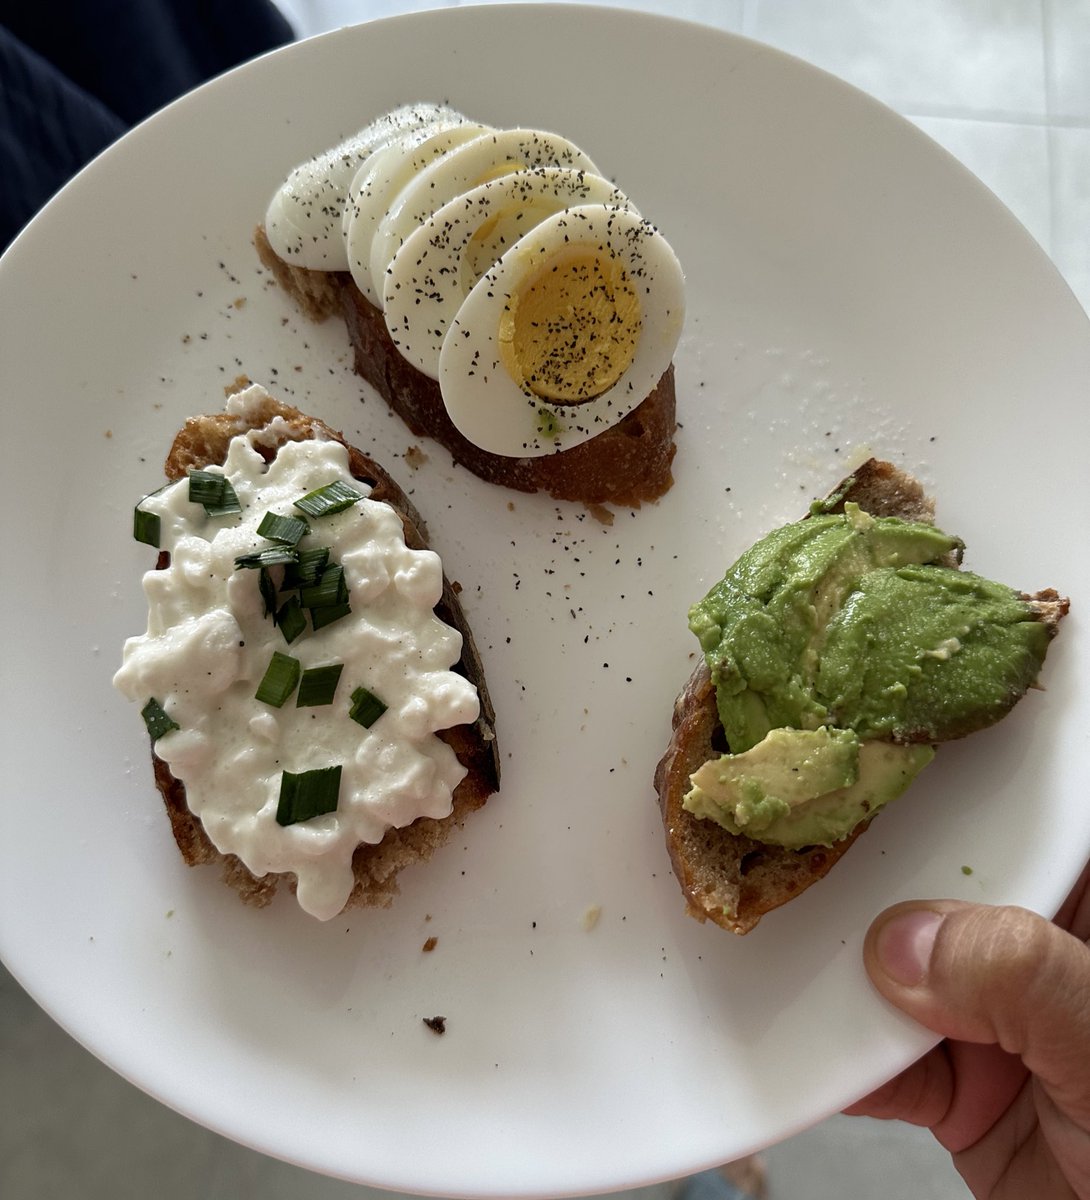 Rank my breakfast toast:

A: egg
B: avocado 
C: cottage cheese

1️⃣ ..?      2️⃣ ..?     3️⃣ ..? 

#breakfast #toast #avocado #avotoast #eggs #boiledeggs #cottagecheese #sourdough #bread #homecooking #toastie